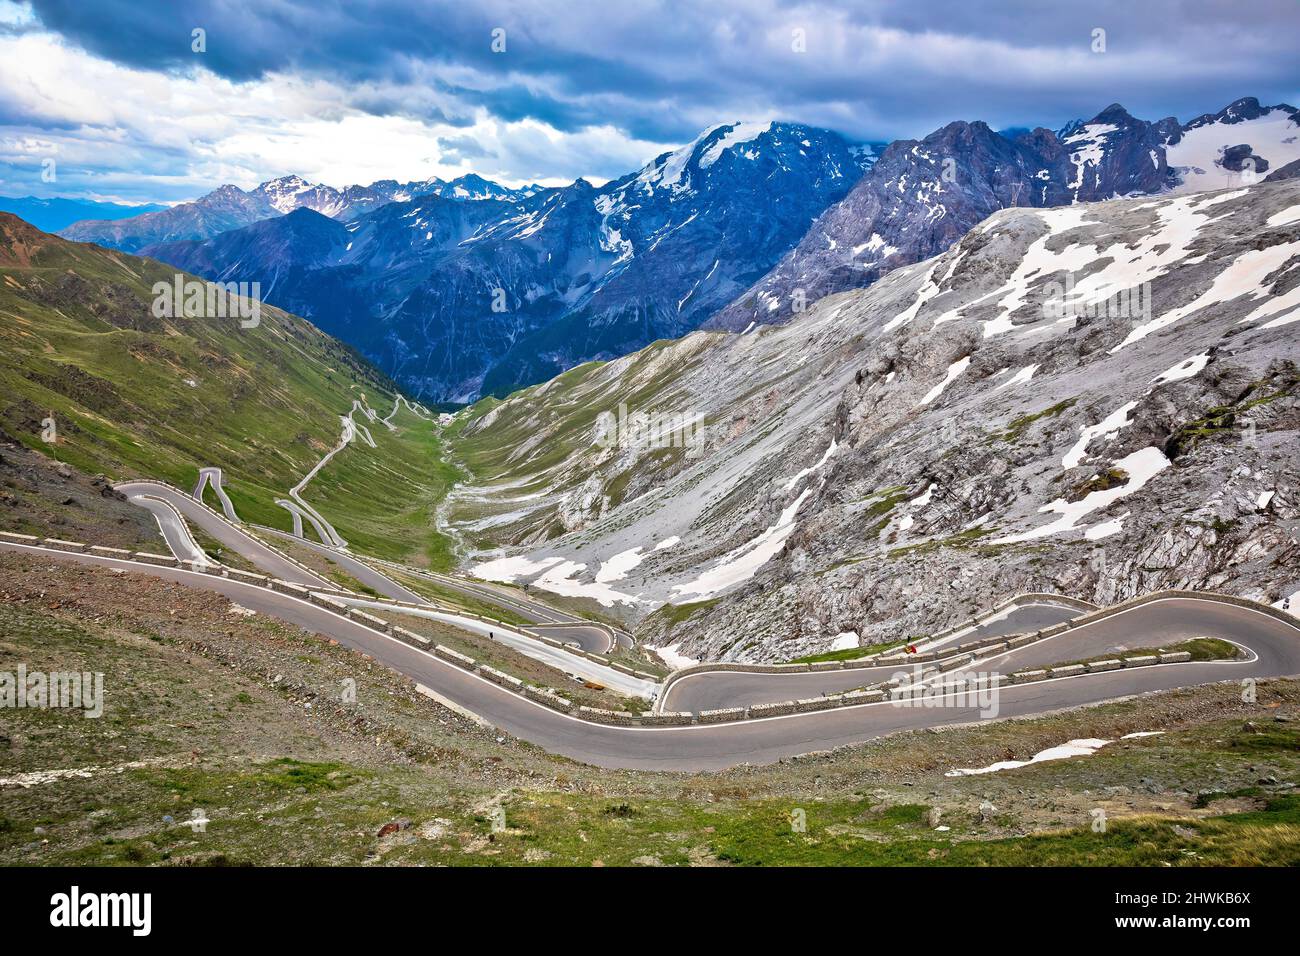 Stilfser Joch Bergpass oder Stilfser Joch Panoramastraße Serpentinen Blick, Grenze zwischen Italien und der Schweiz Stockfoto